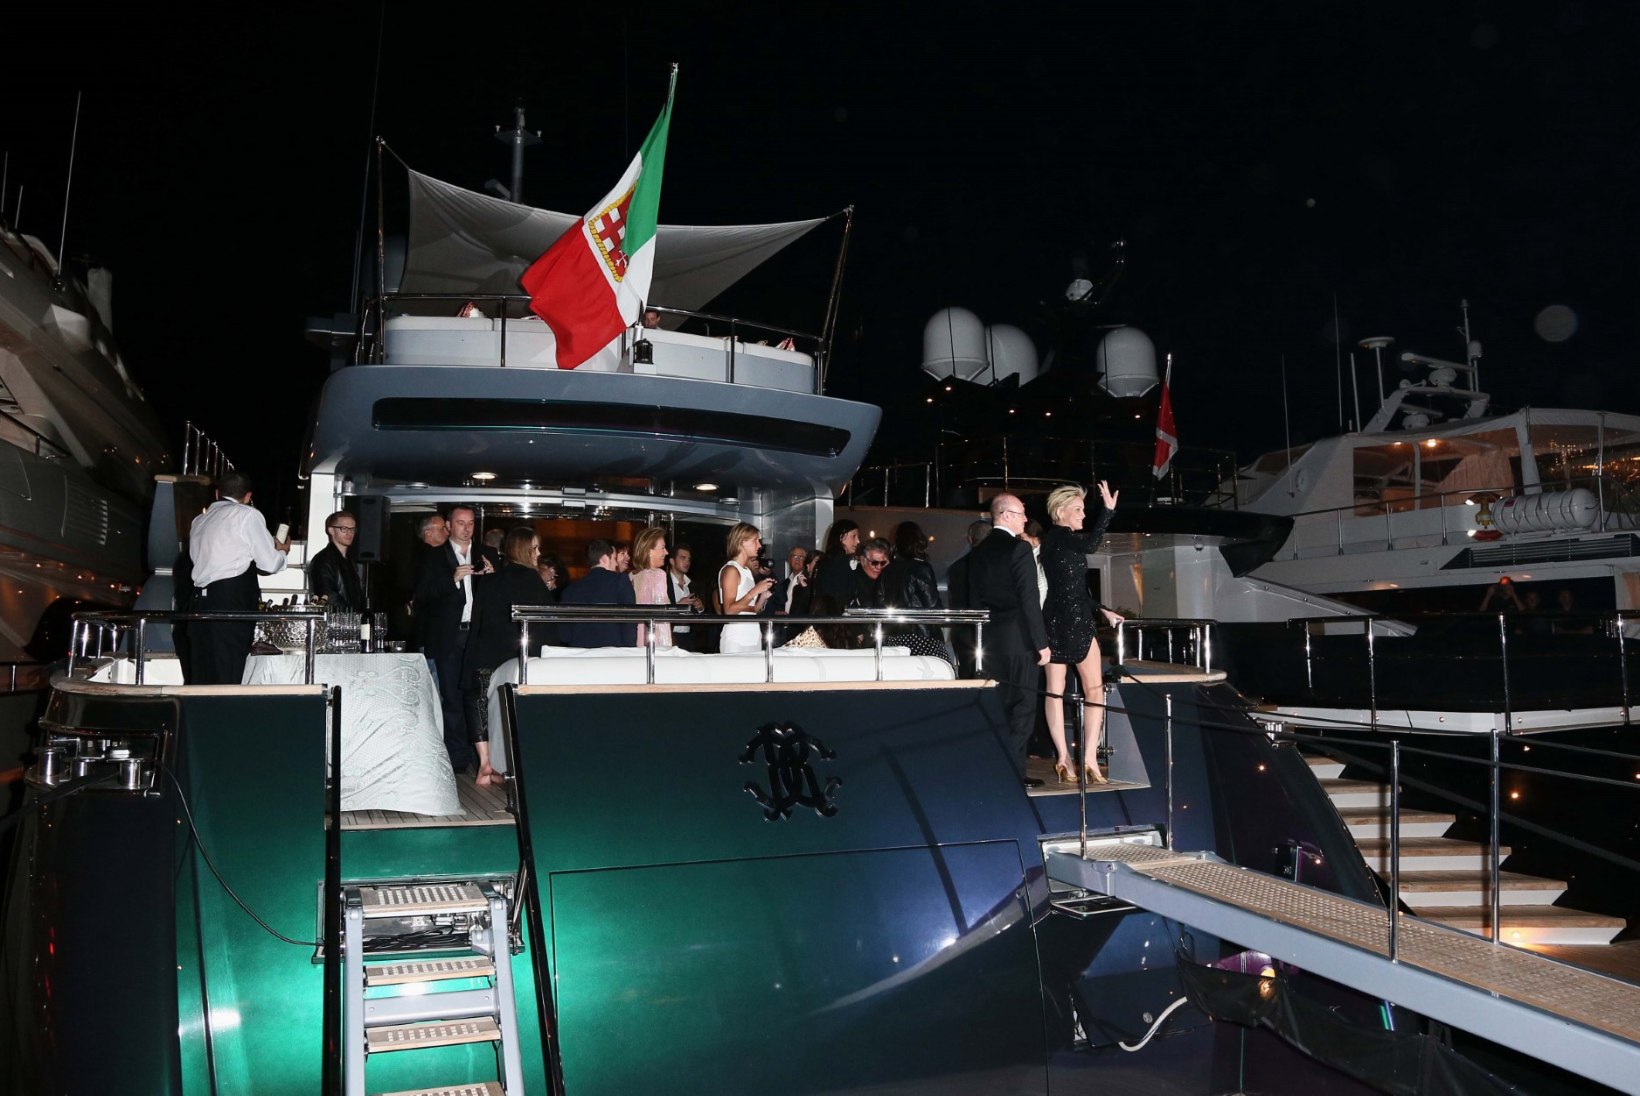 GALERII: Roberto Cavalli korraldas oma jahtlaeval erapeo, kutsutud olid nii Sharon Stone kui ka Justin Bieber